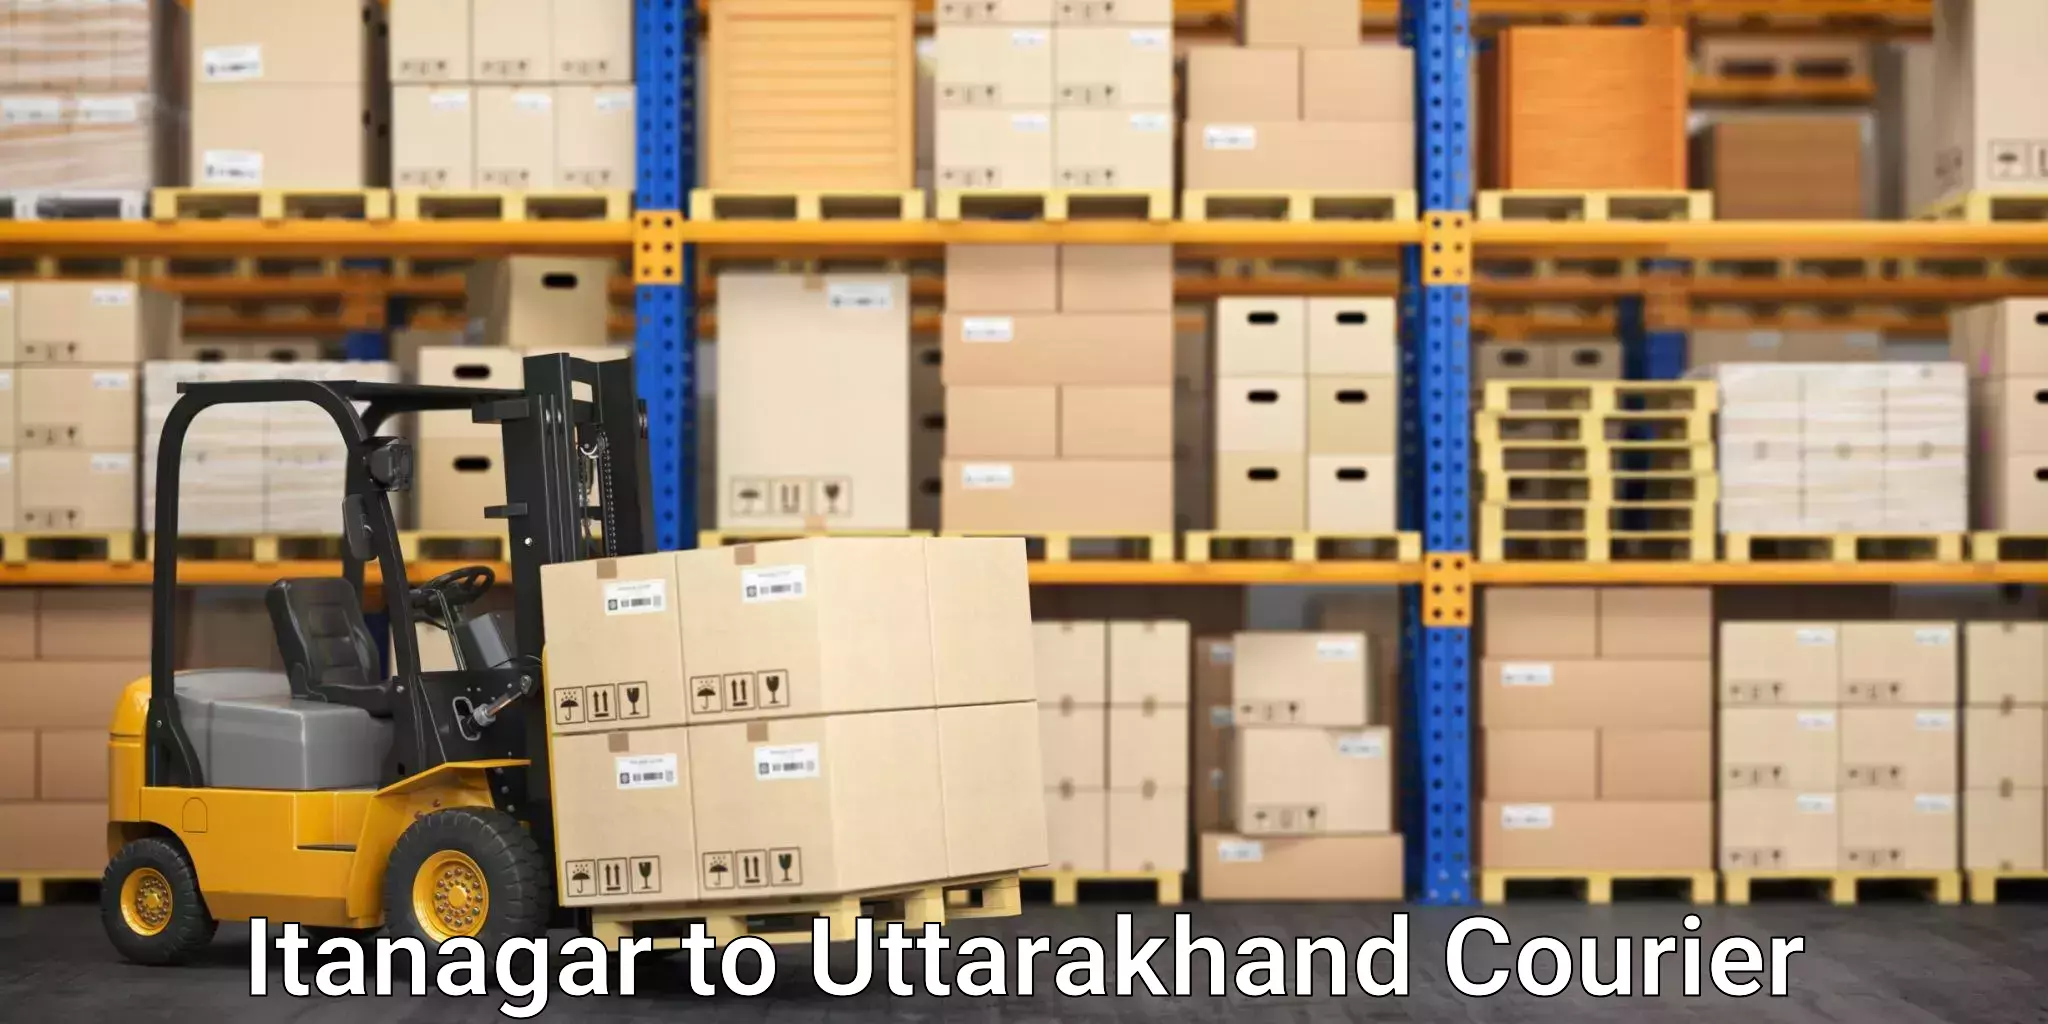 Global shipping solutions Itanagar to NIT Garhwal